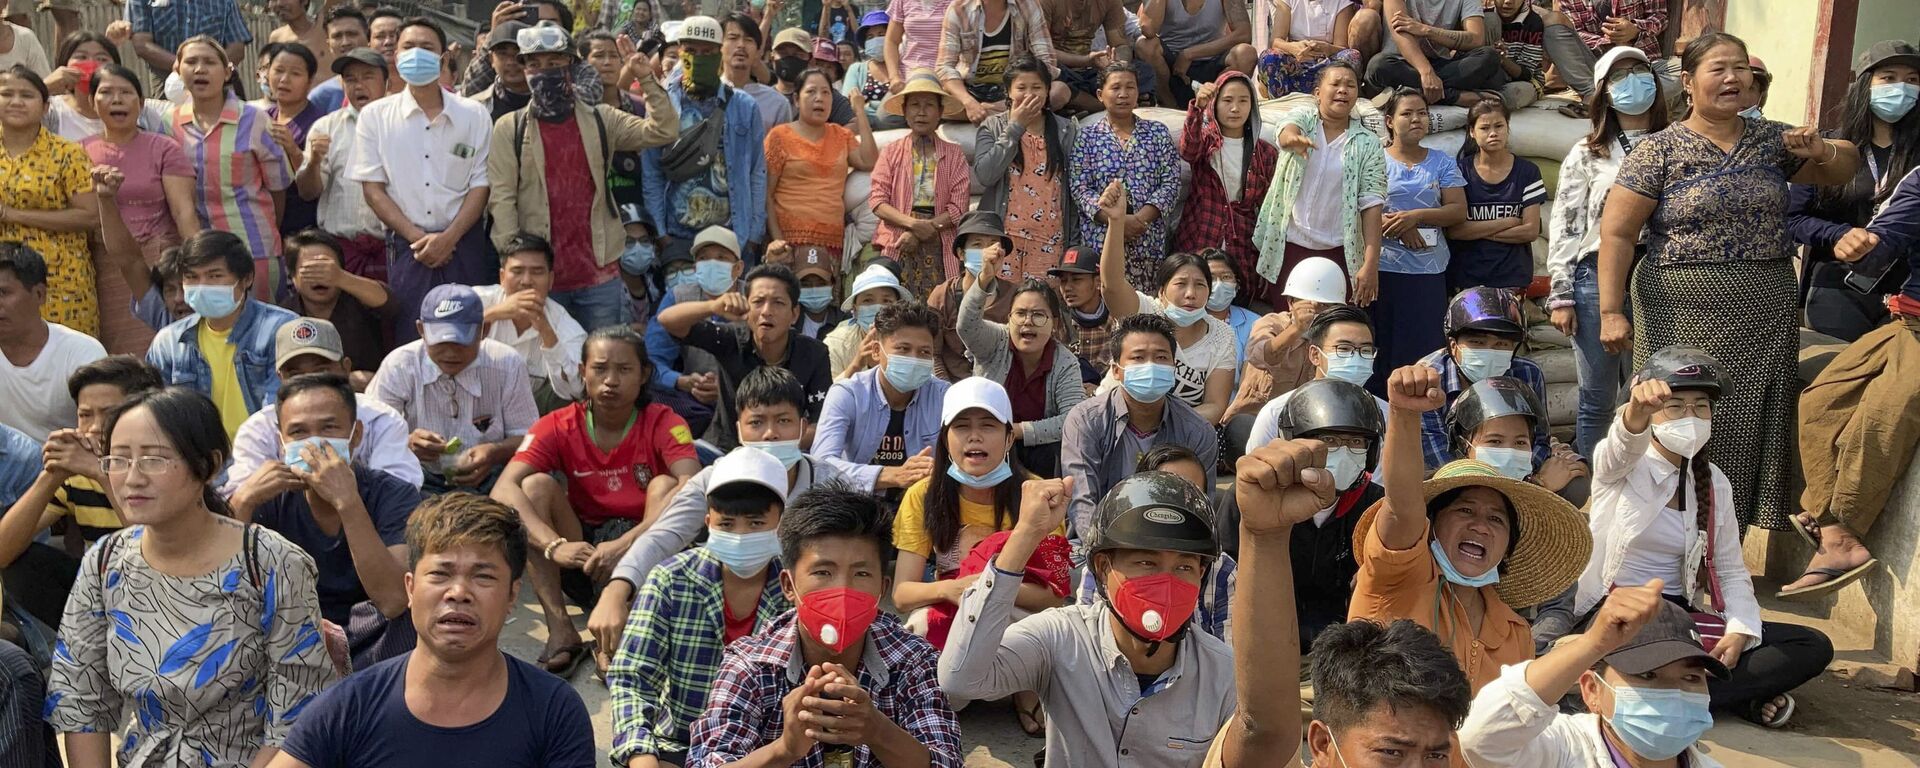 Người biểu tình phản đối đảo chính quân sự ở Mandalay, Myanmar. - Sputnik Việt Nam, 1920, 13.03.2021